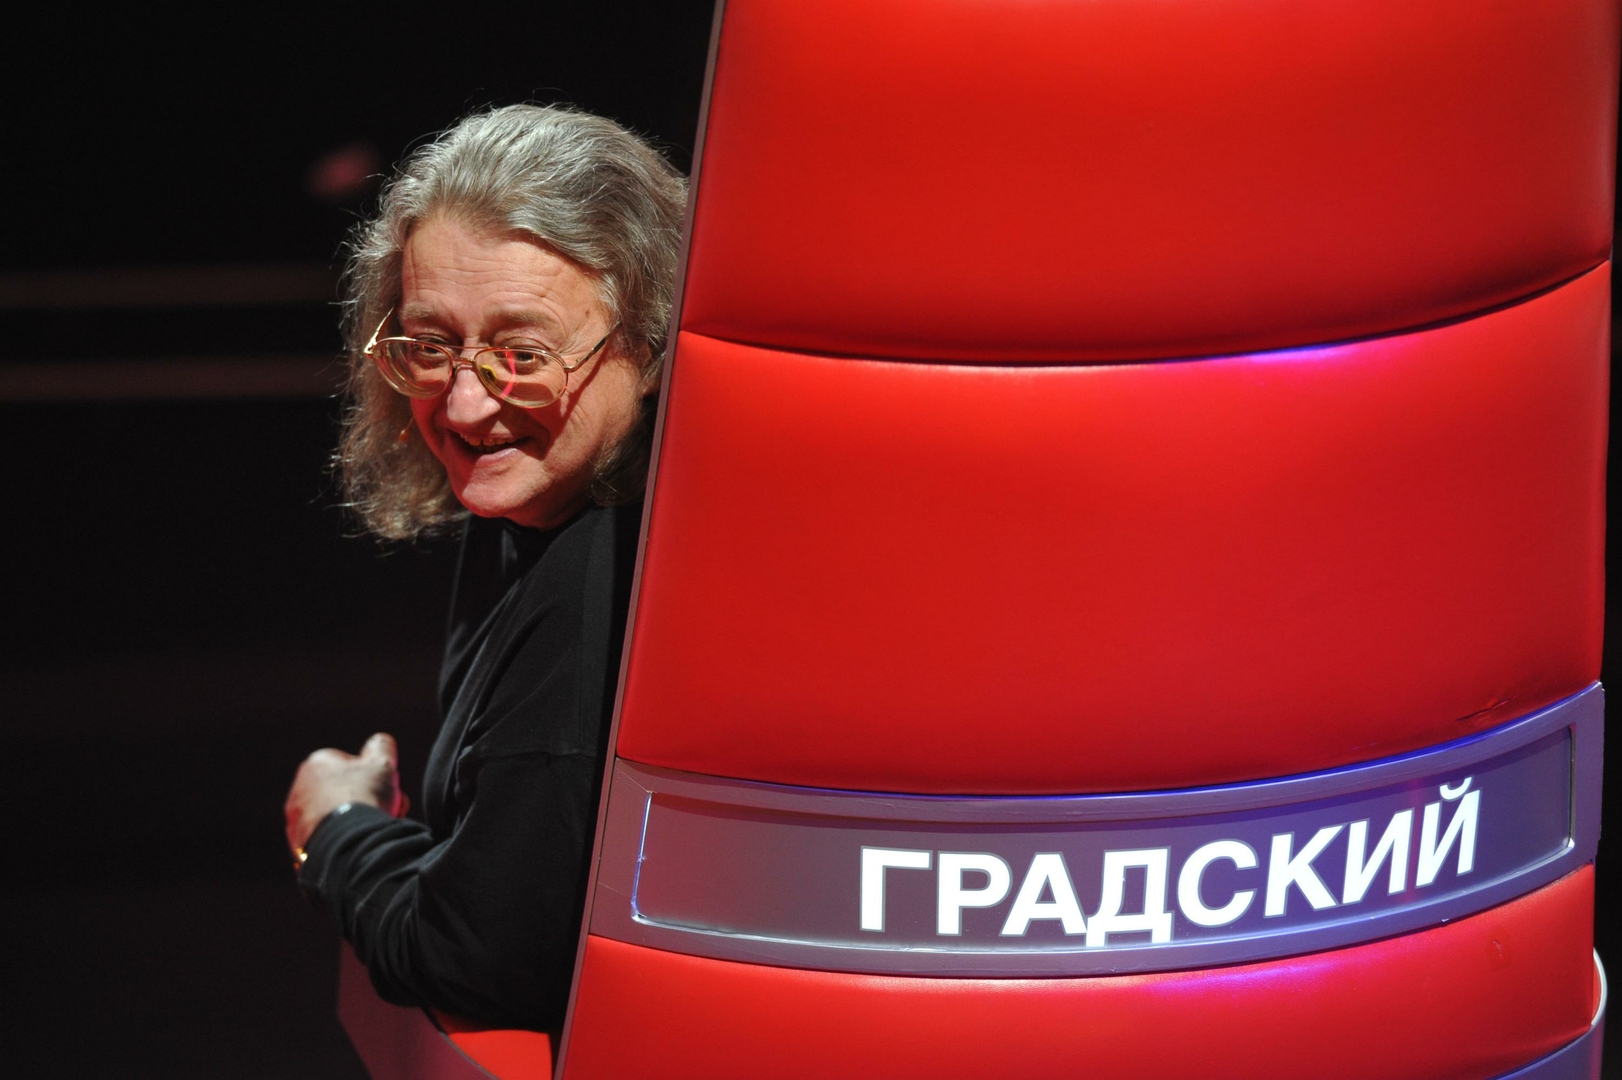 Александр Градский был многолетним наставником в популярном шоу